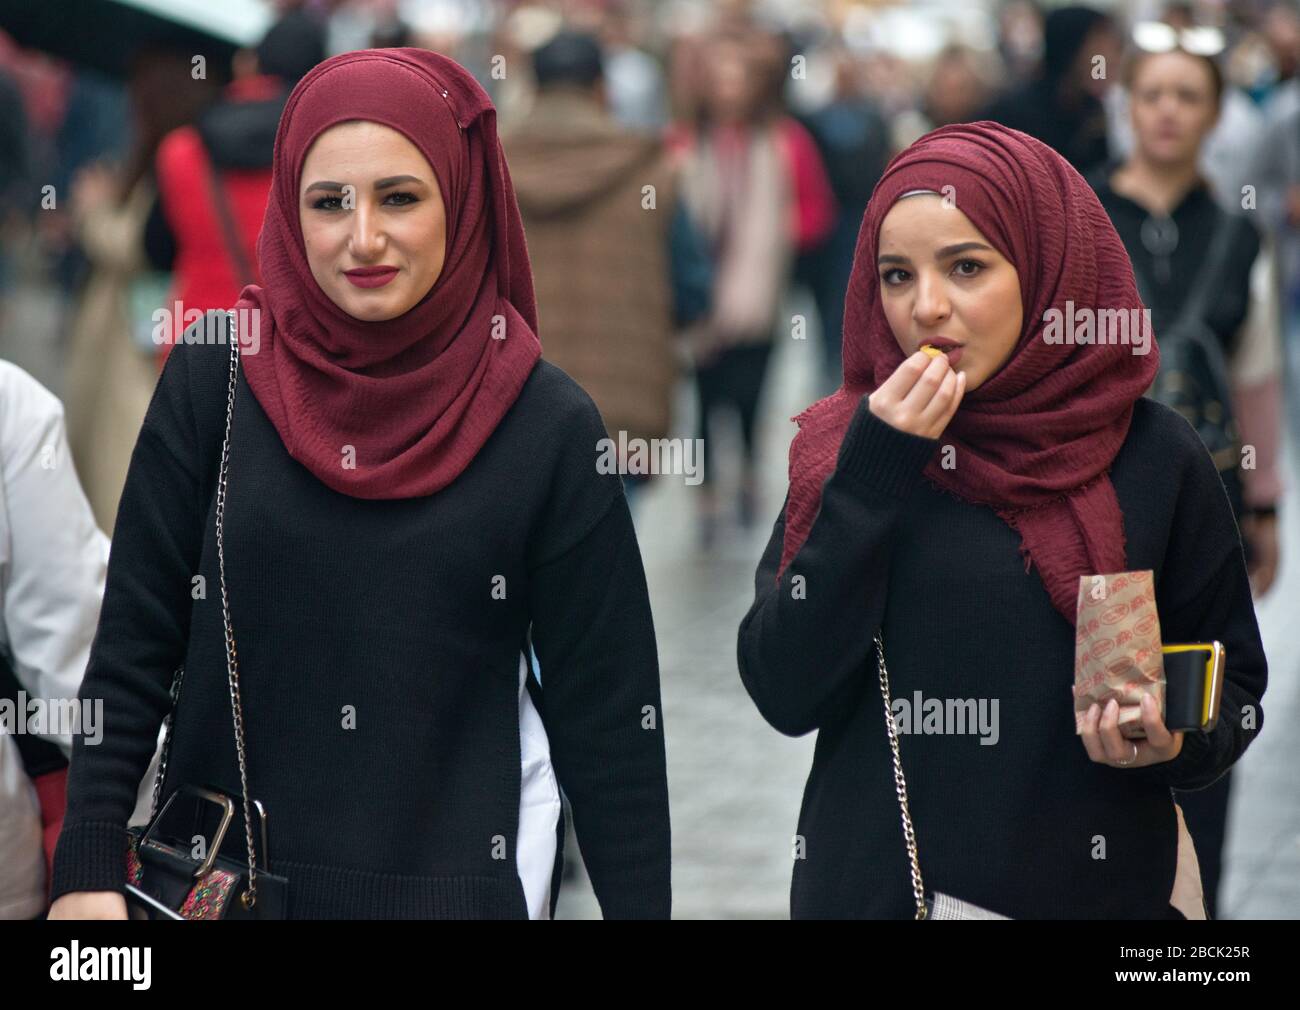 Turkish women wearing matching pashminas in Istiklal avenue, Istanbul. Turkey Stock Photo